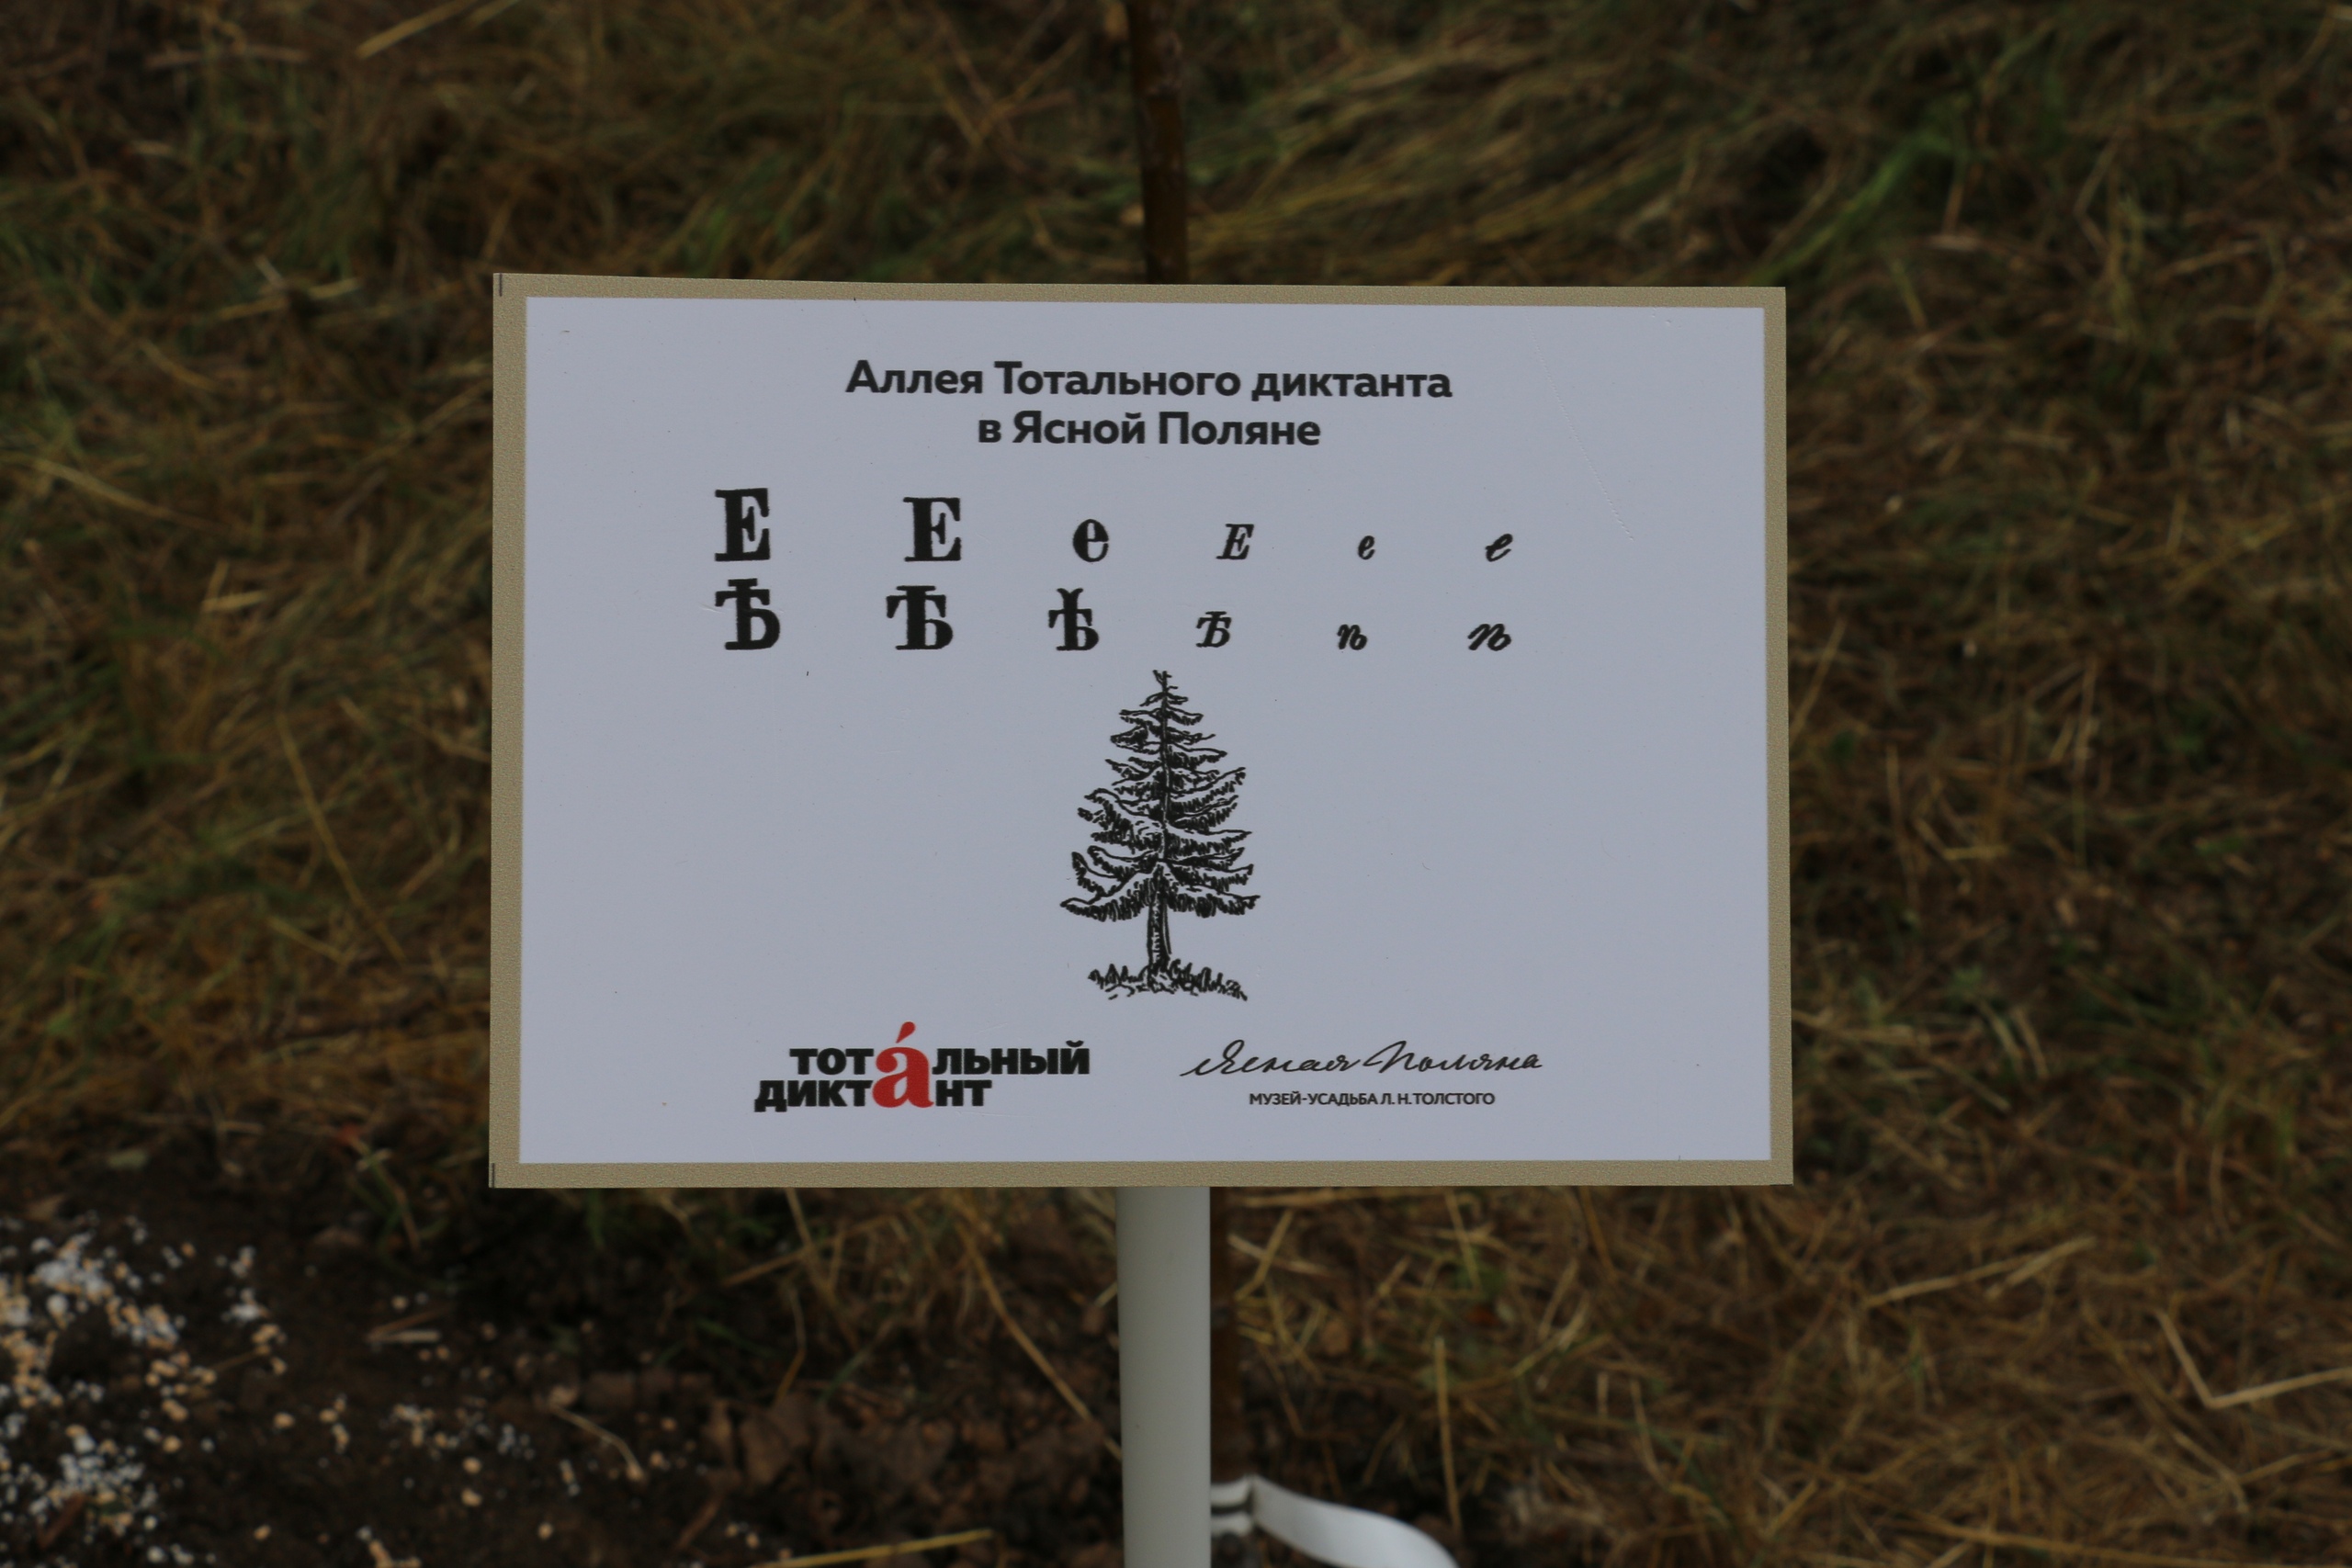 Высадка аллеи "Тотального диктанта" в Ясной Поляне: ФОТО